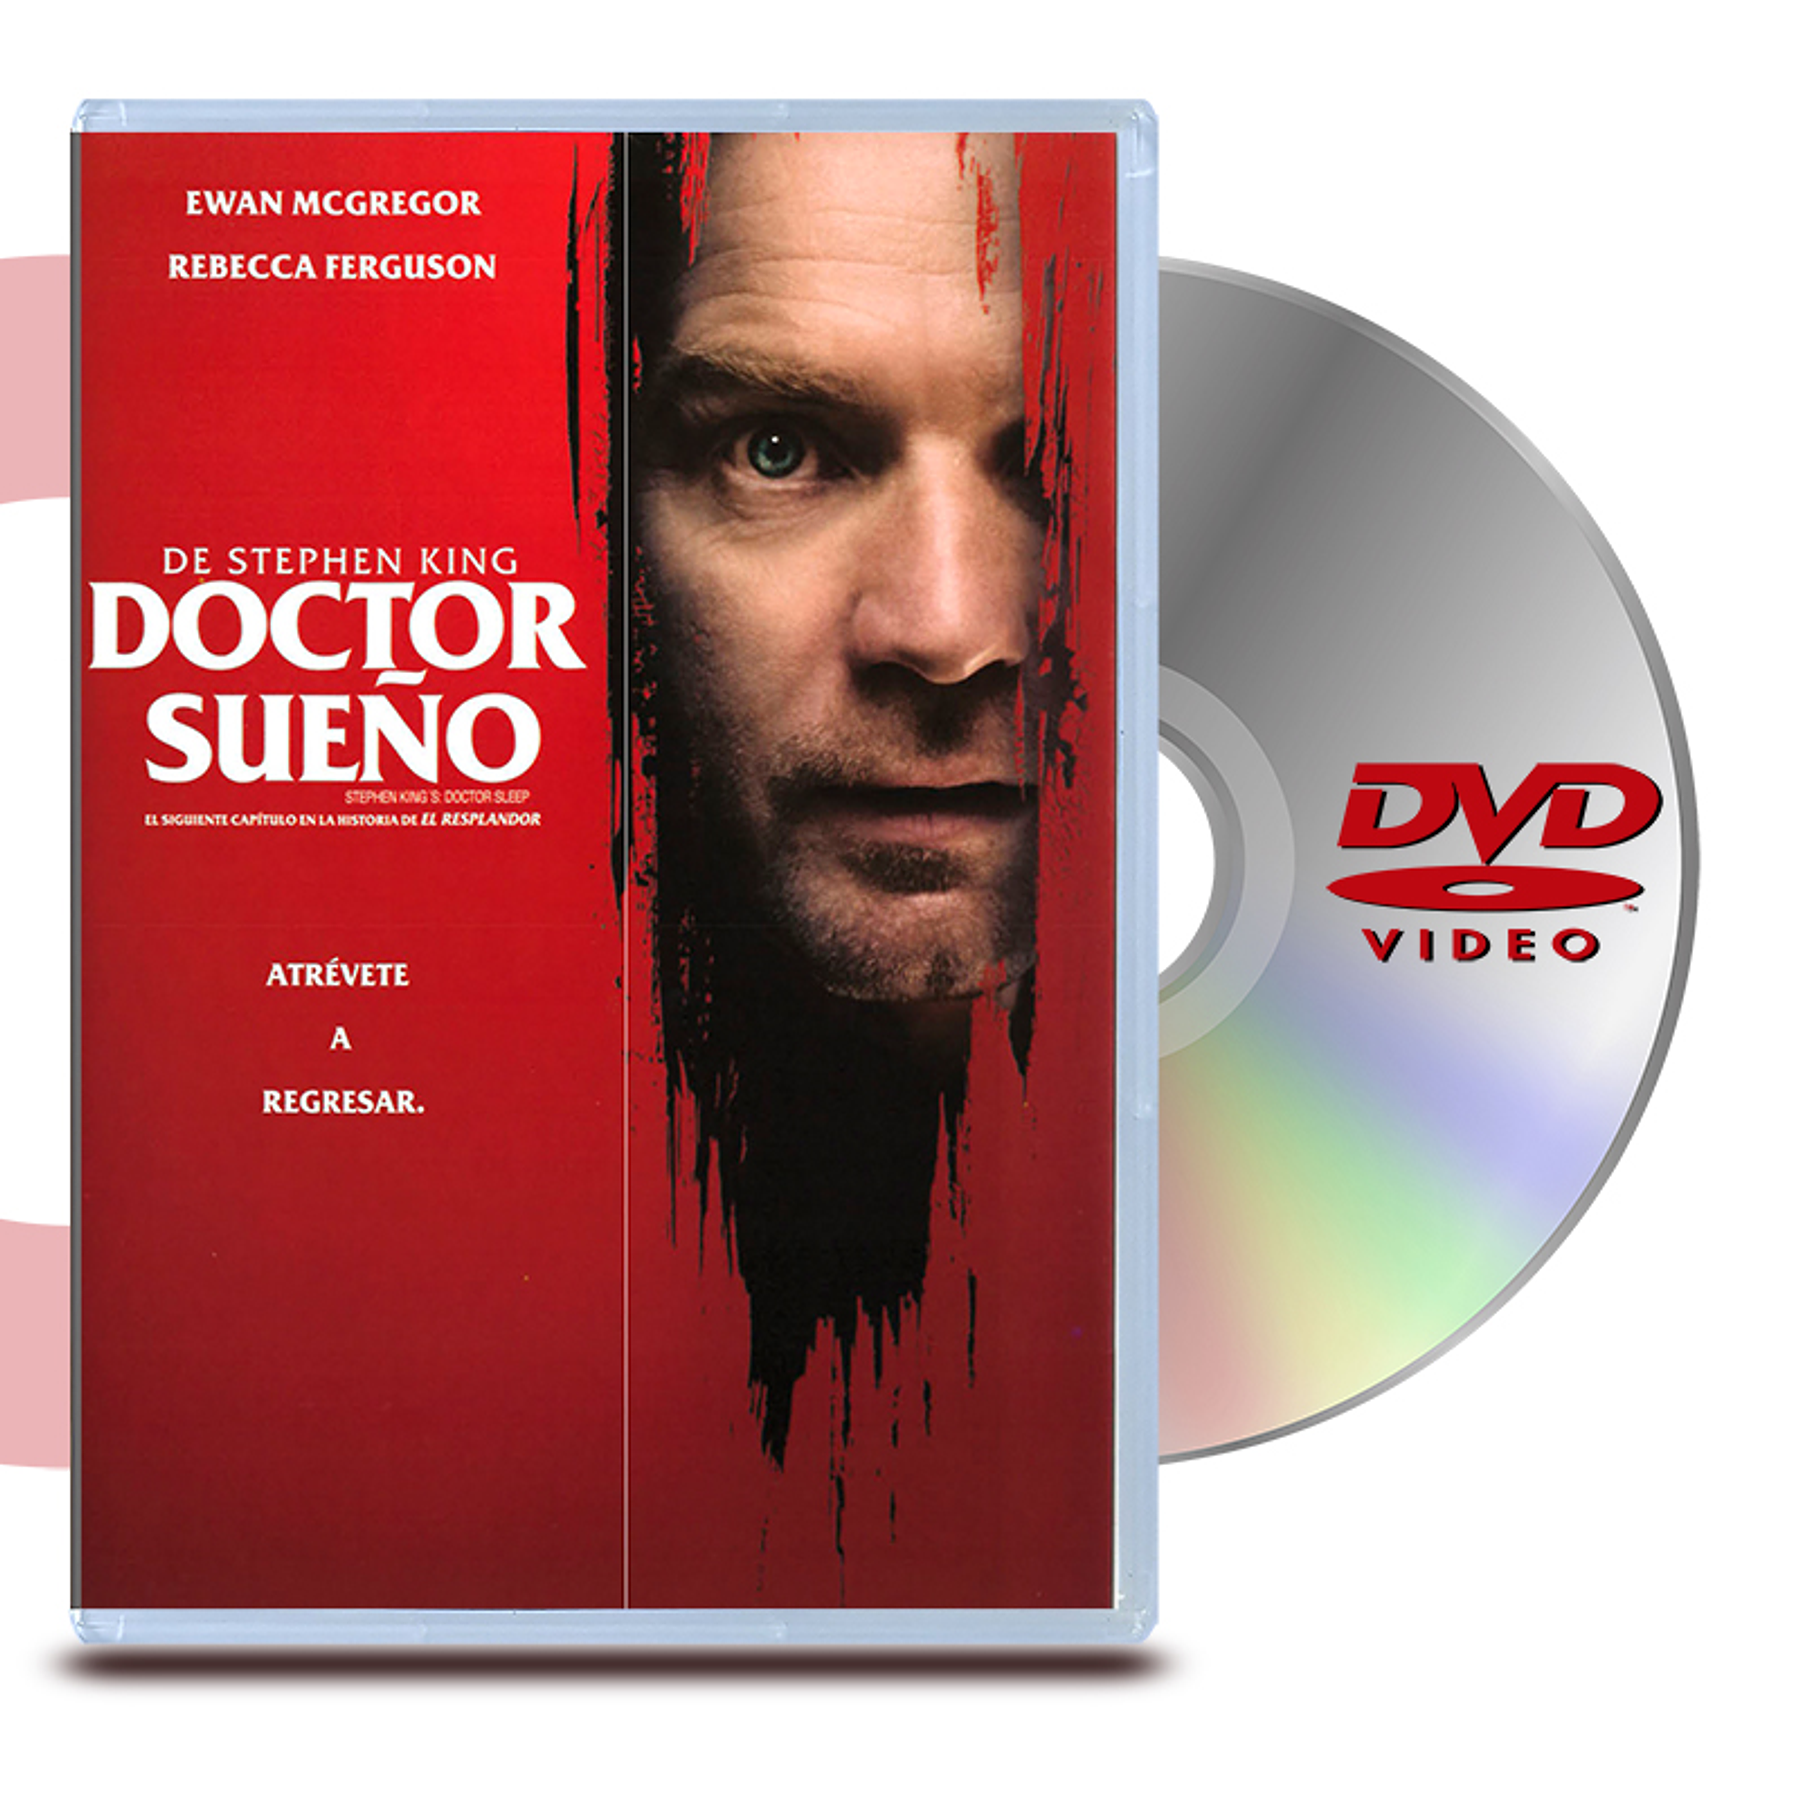 DVD DOCTOR SUEÑO